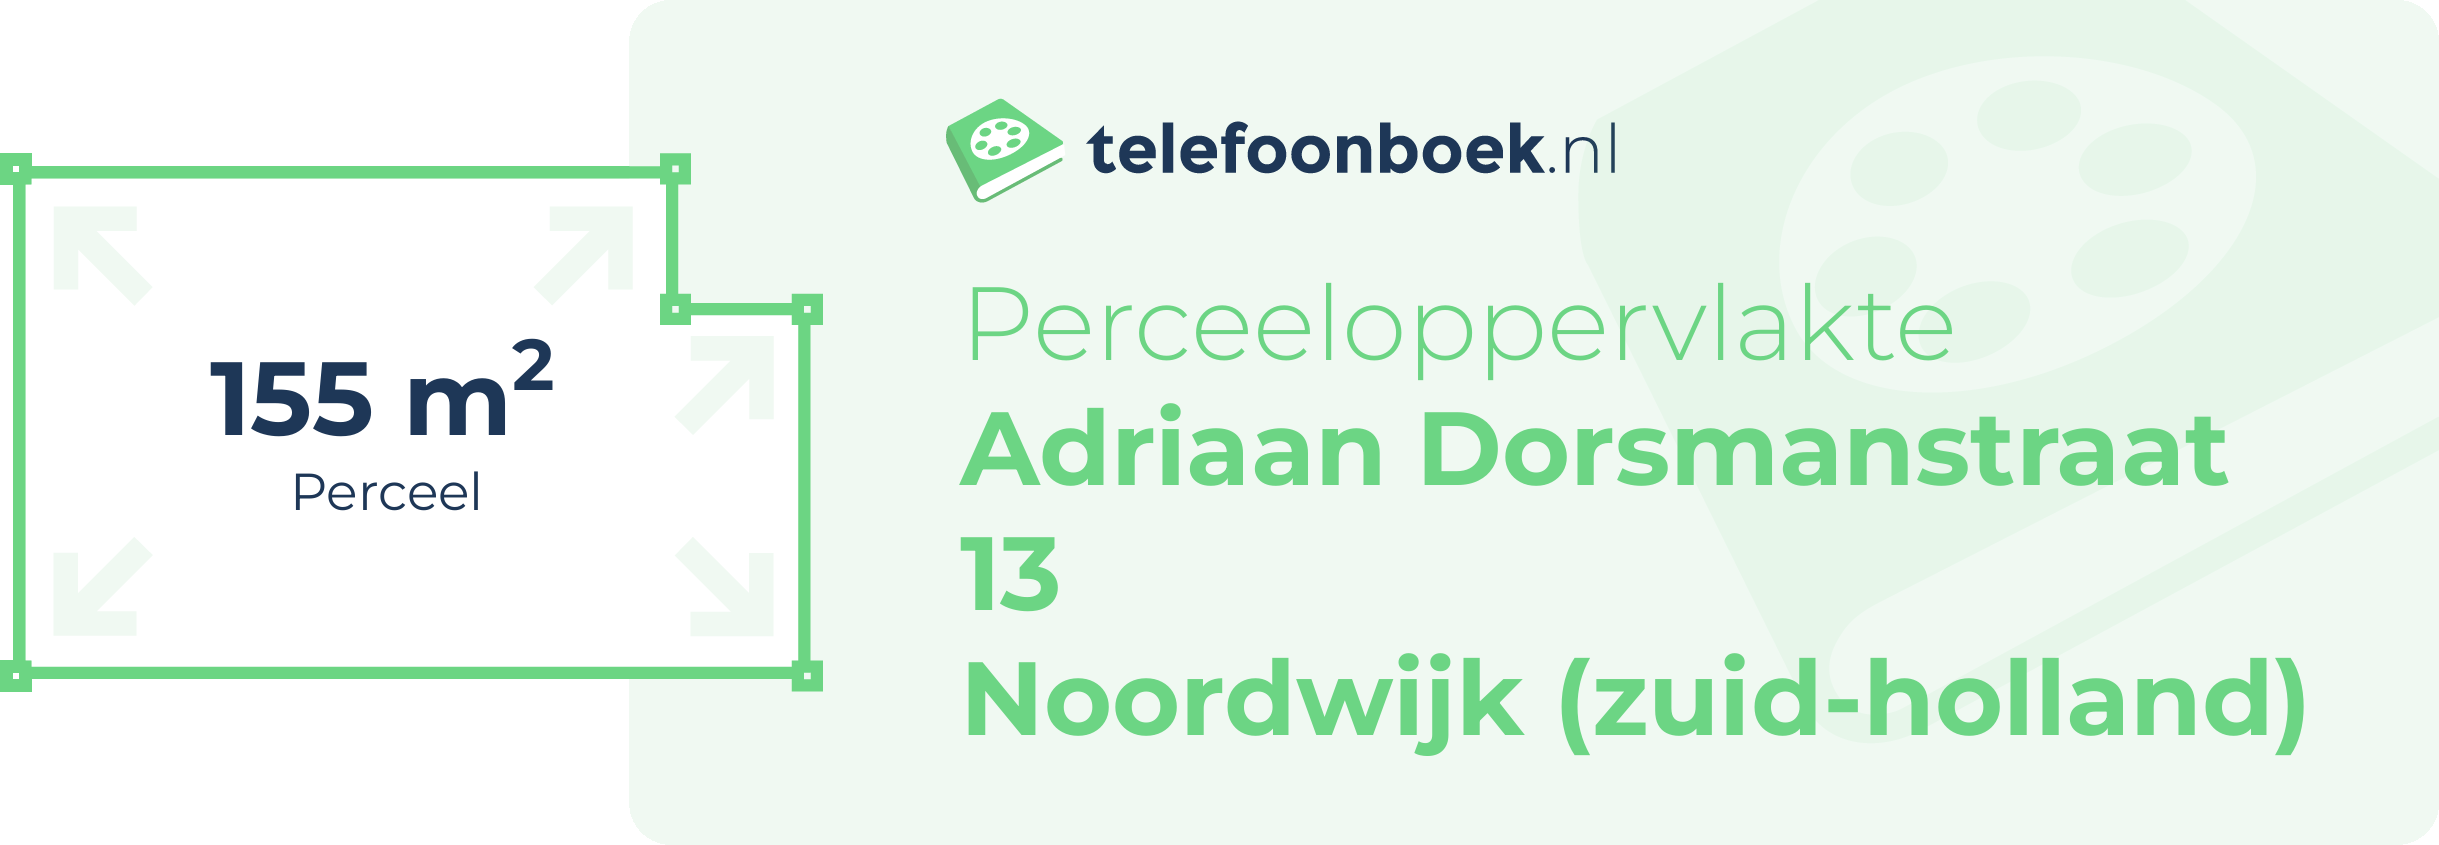 Perceeloppervlakte Adriaan Dorsmanstraat 13 Noordwijk (Zuid-Holland)